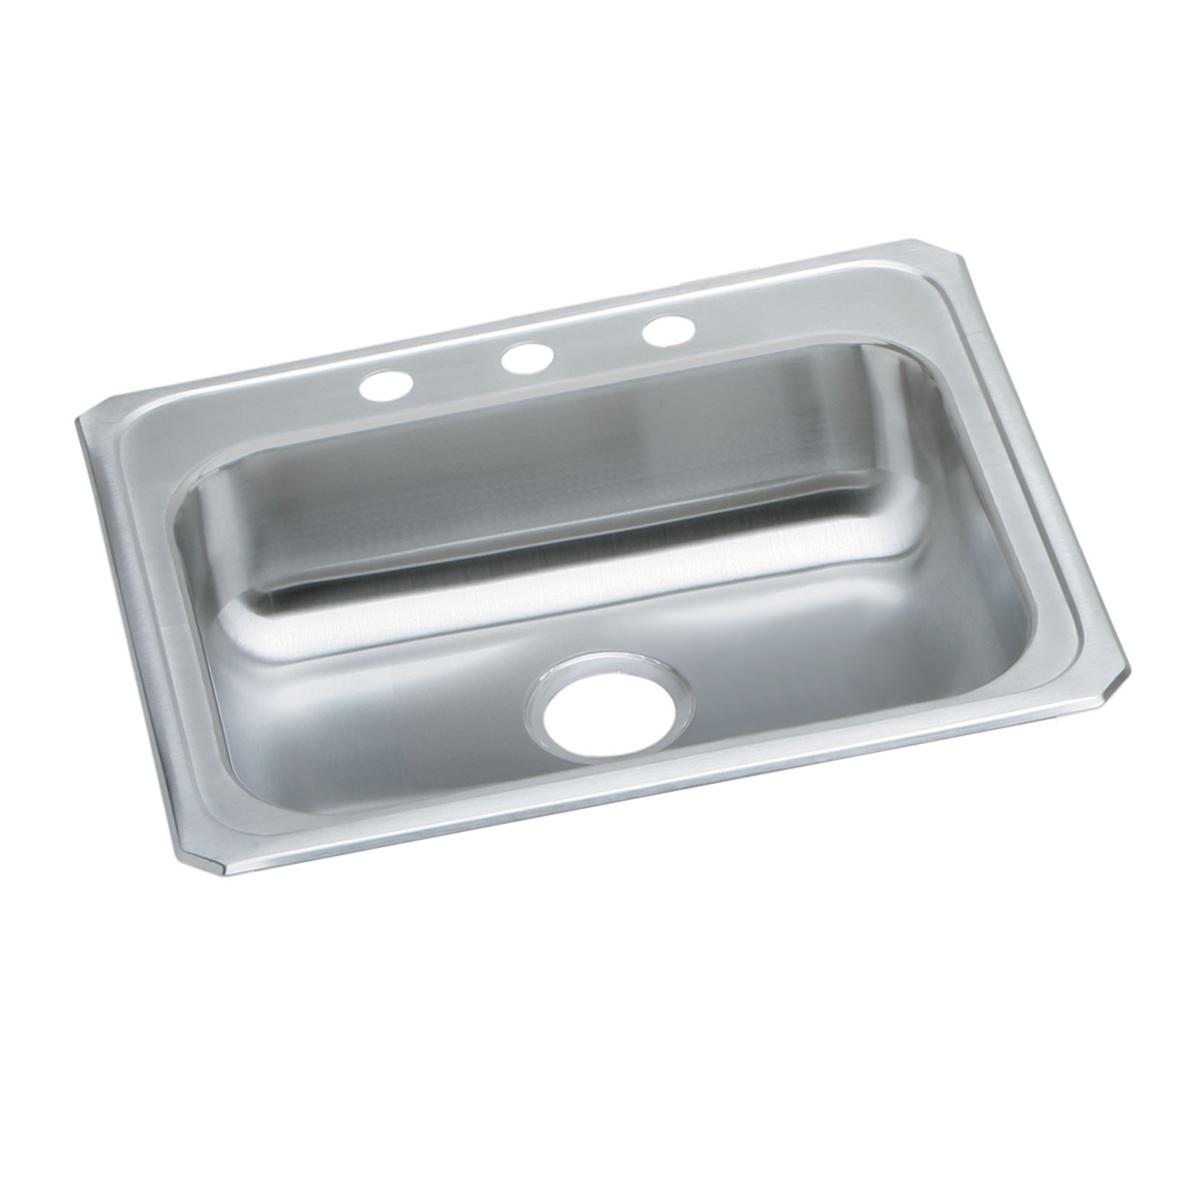 Elkay Stainless Steel Single Bowl Drop-in Sink 1258670